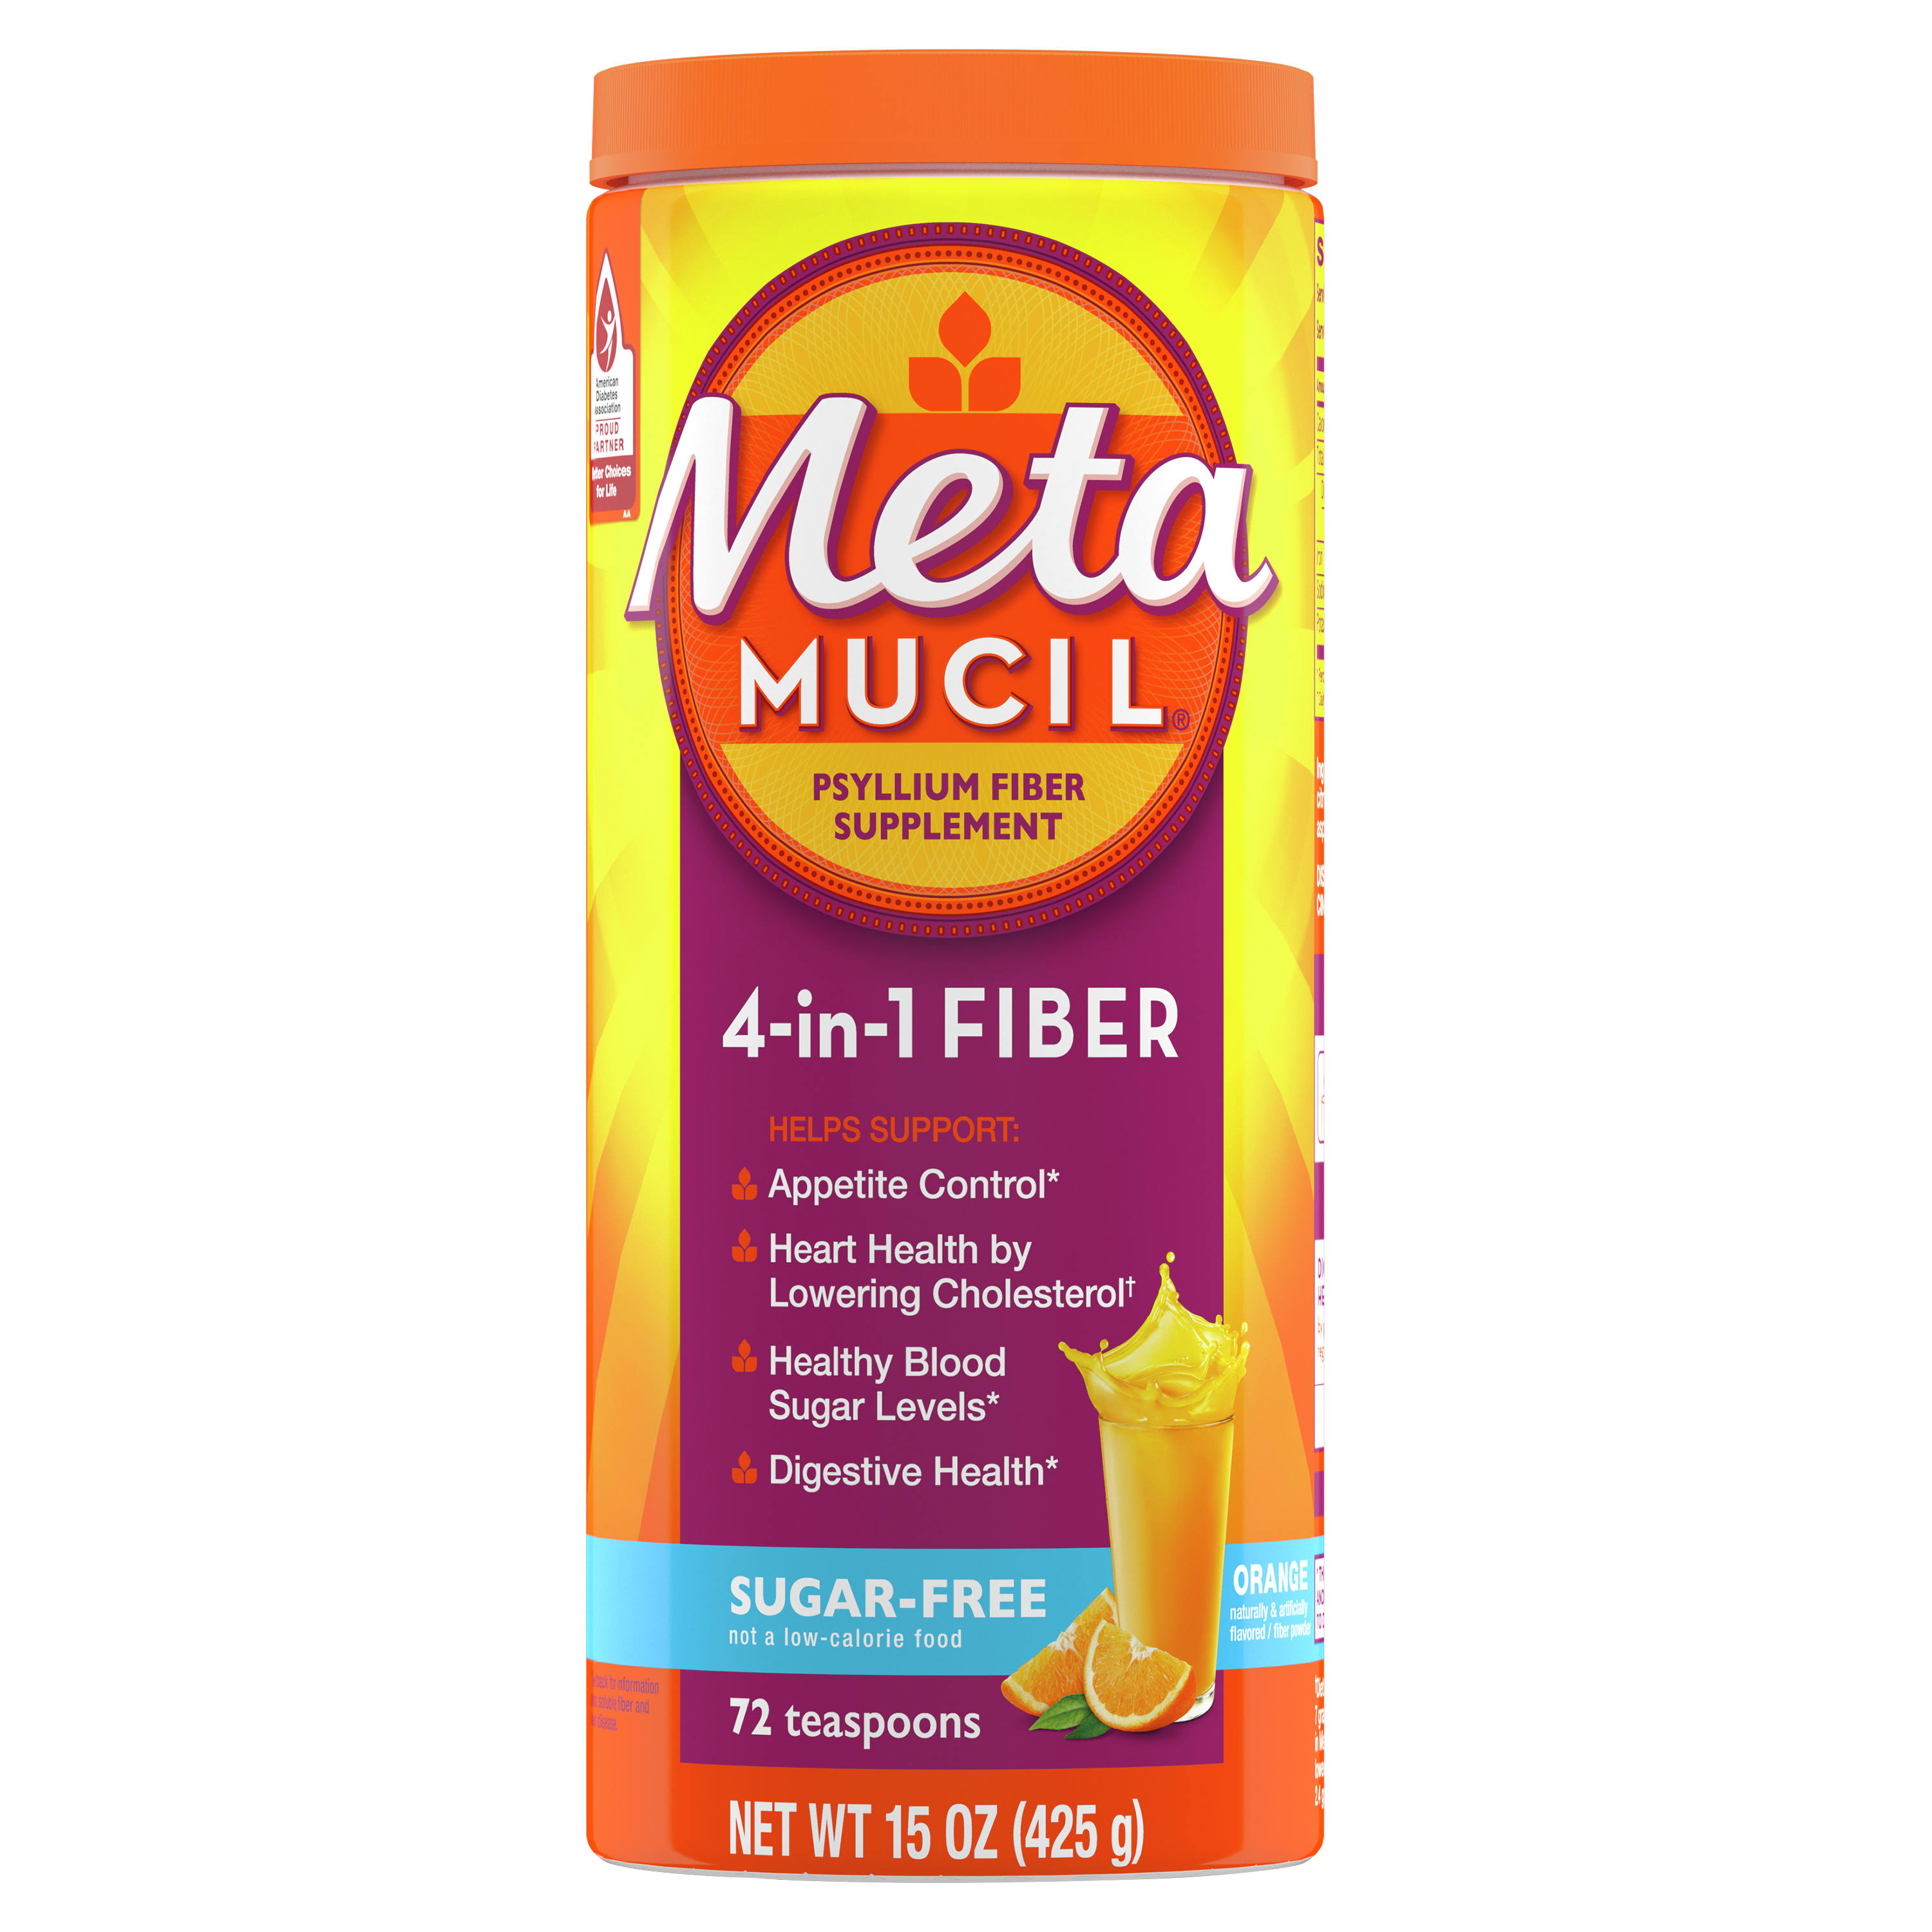 Metamucil Daily Fiber Supplement - Orange Smooth, 15oz